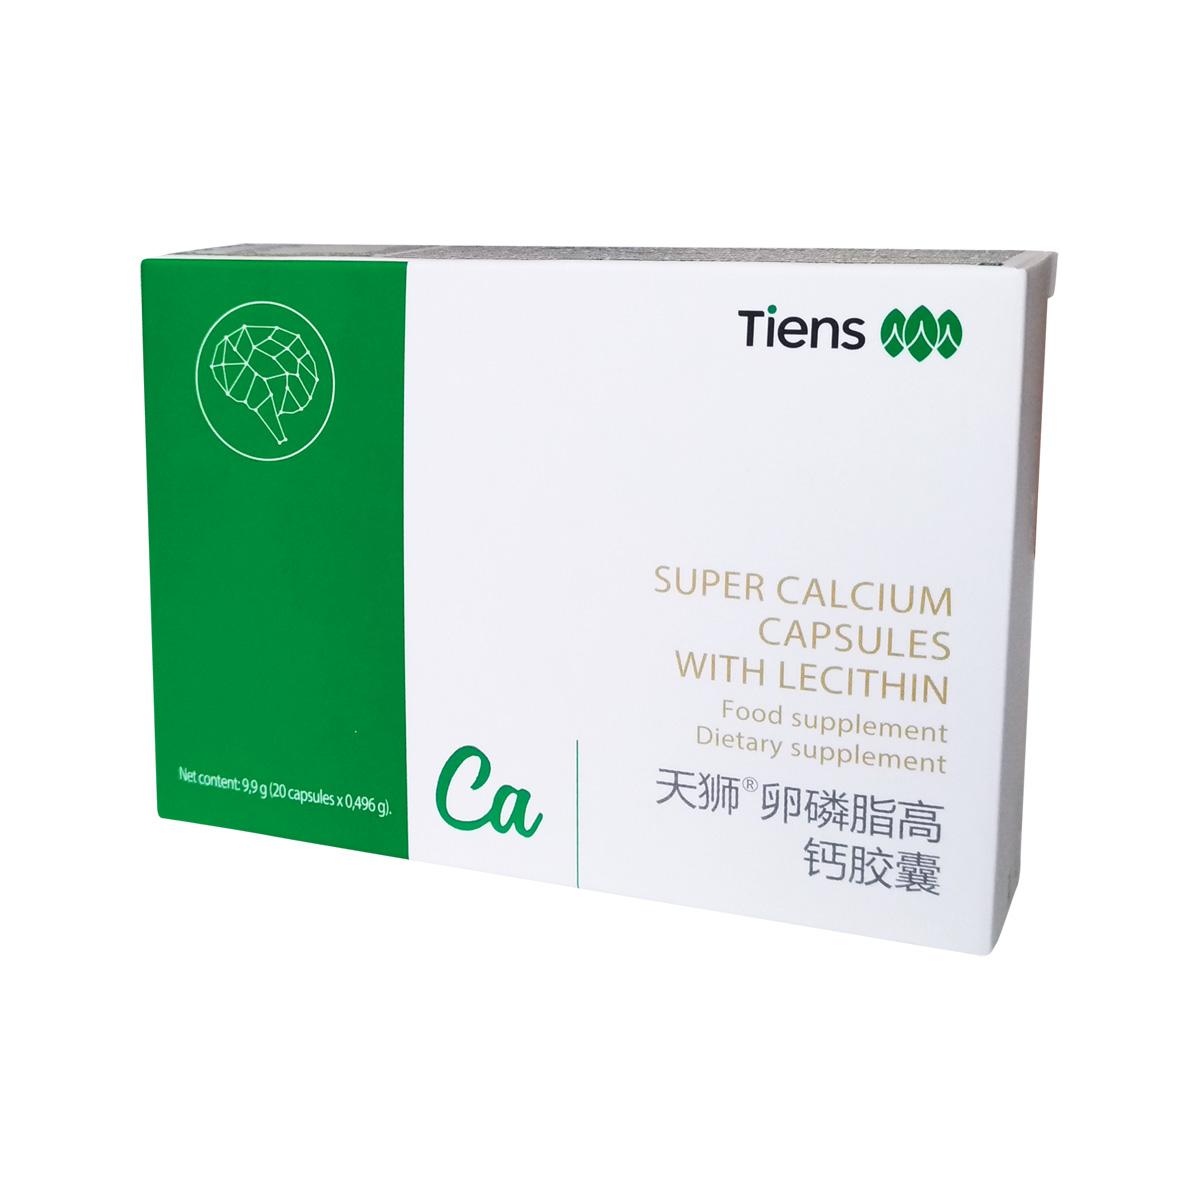 TIENS SUPER Calcium capsules with Lecithin, 20 capsules – TIENS USA